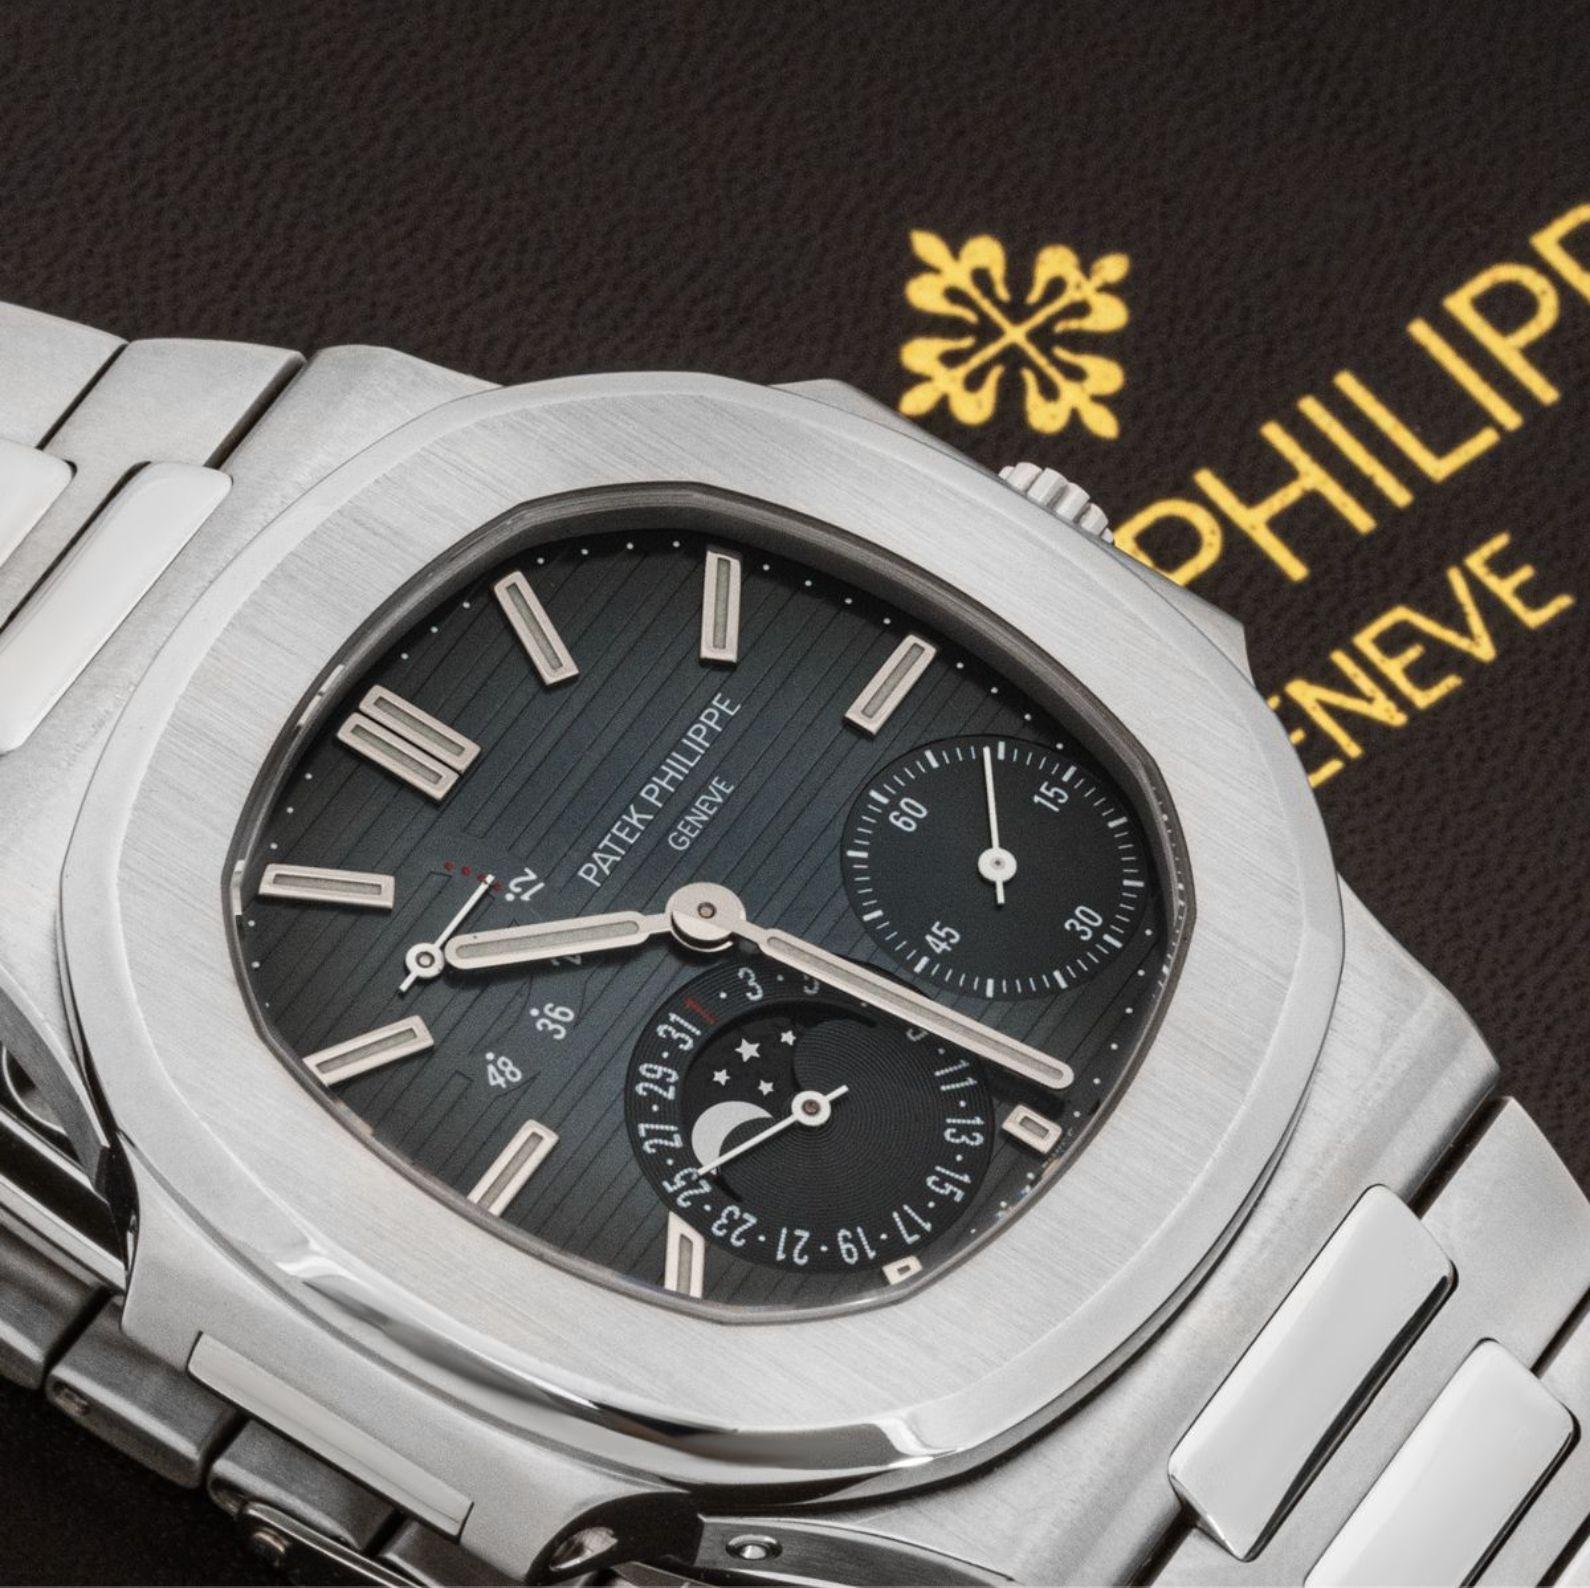 Eine sehr seltene Edelstahl-Nautilus-Armbanduhr von Patek Philippe. Sie verfügt über ein schwarz-graues Zifferblatt mit applizierten Stundenmarkierungen, kleiner Sekunde, Datums- und Mondphasenanzeige sowie einer Gangreserveanzeige.

Ausgestattet